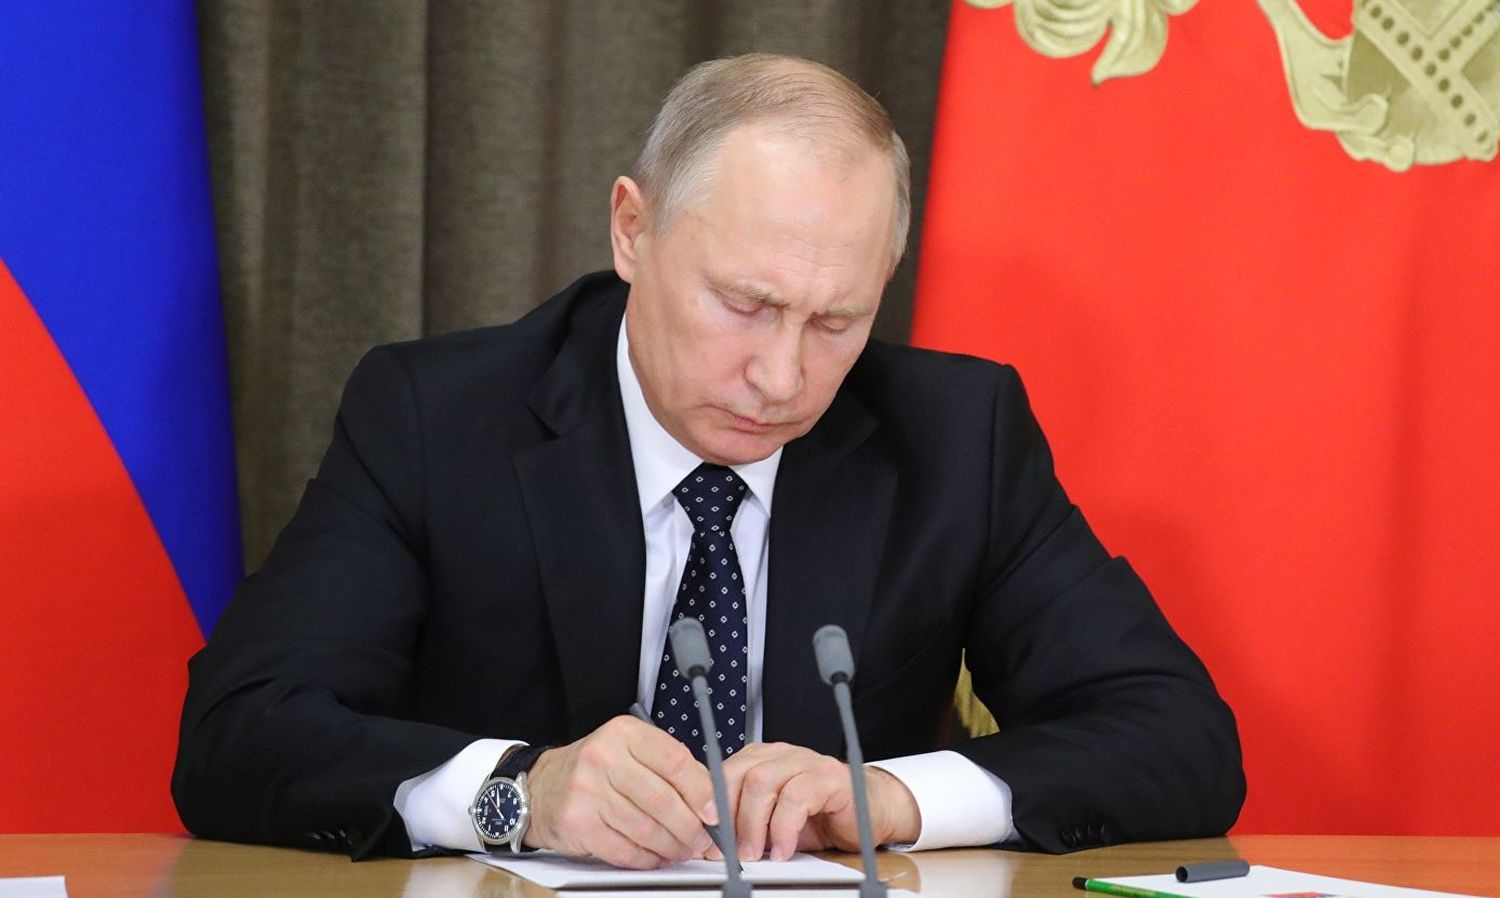 Путин упростил получение права на временное проживание в России